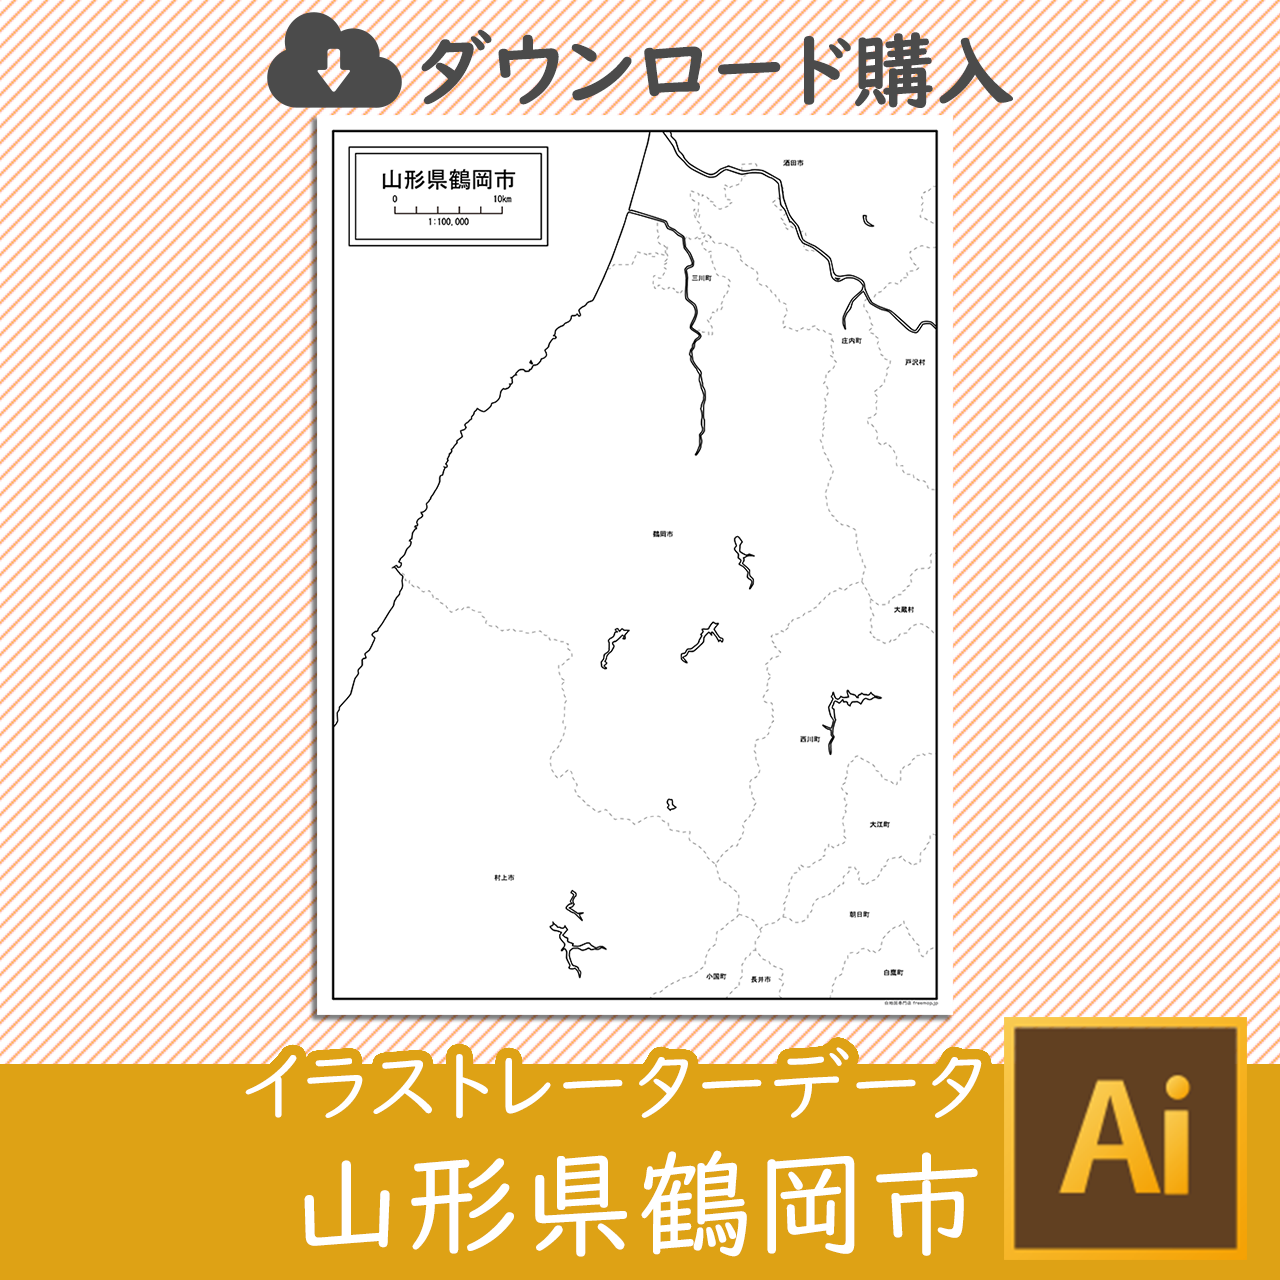 鶴岡市のaiデータのサムネイル画像